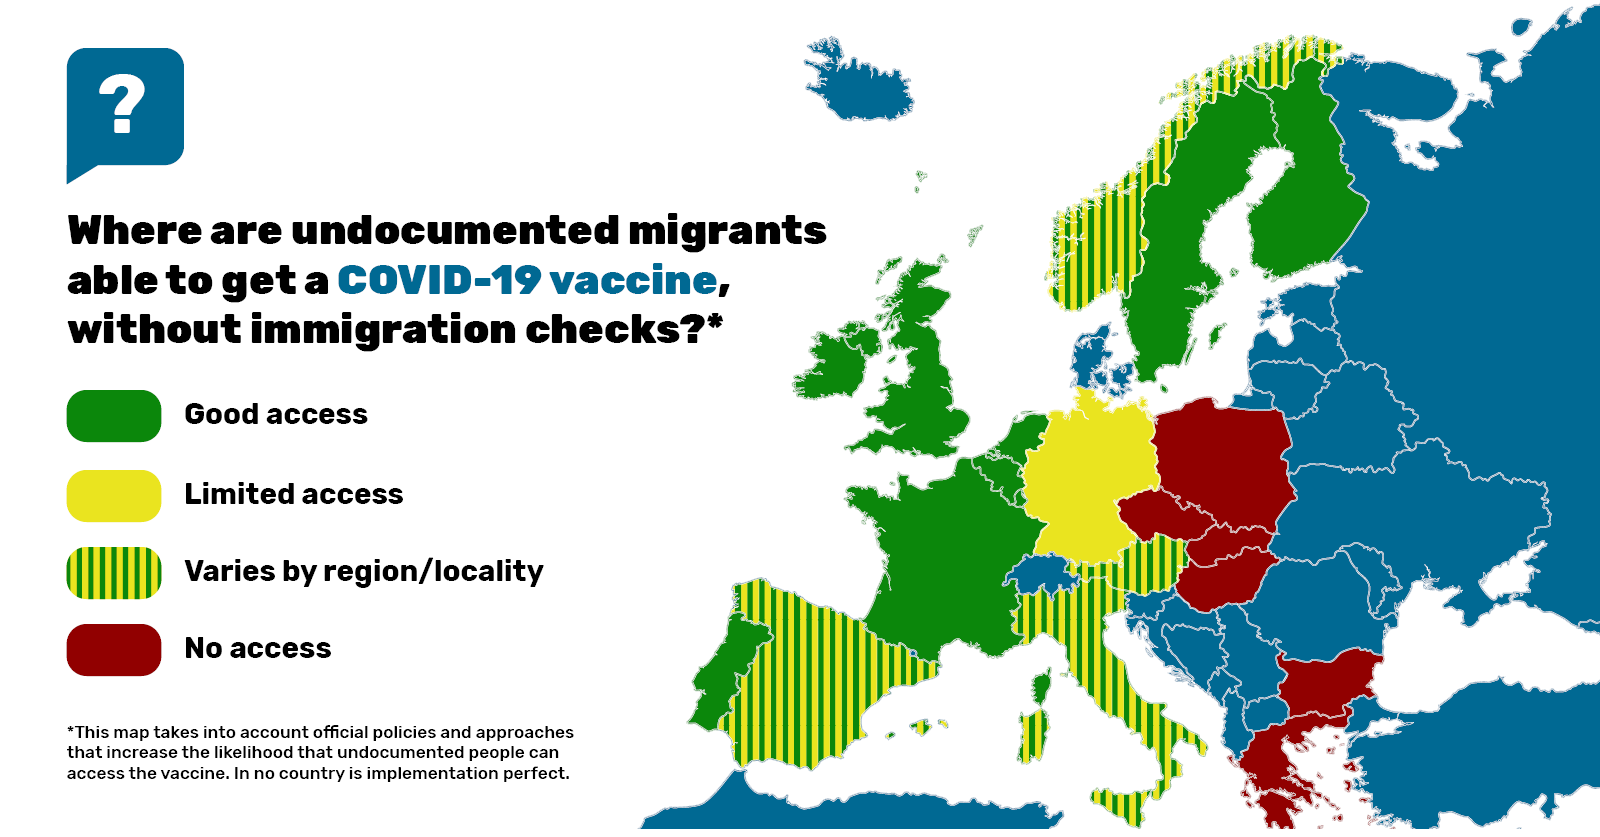 Carte de l'Europe montrant où les sans-papiers peuvent obtenir un vaccin COVID-19, sans contrôle d'immigration